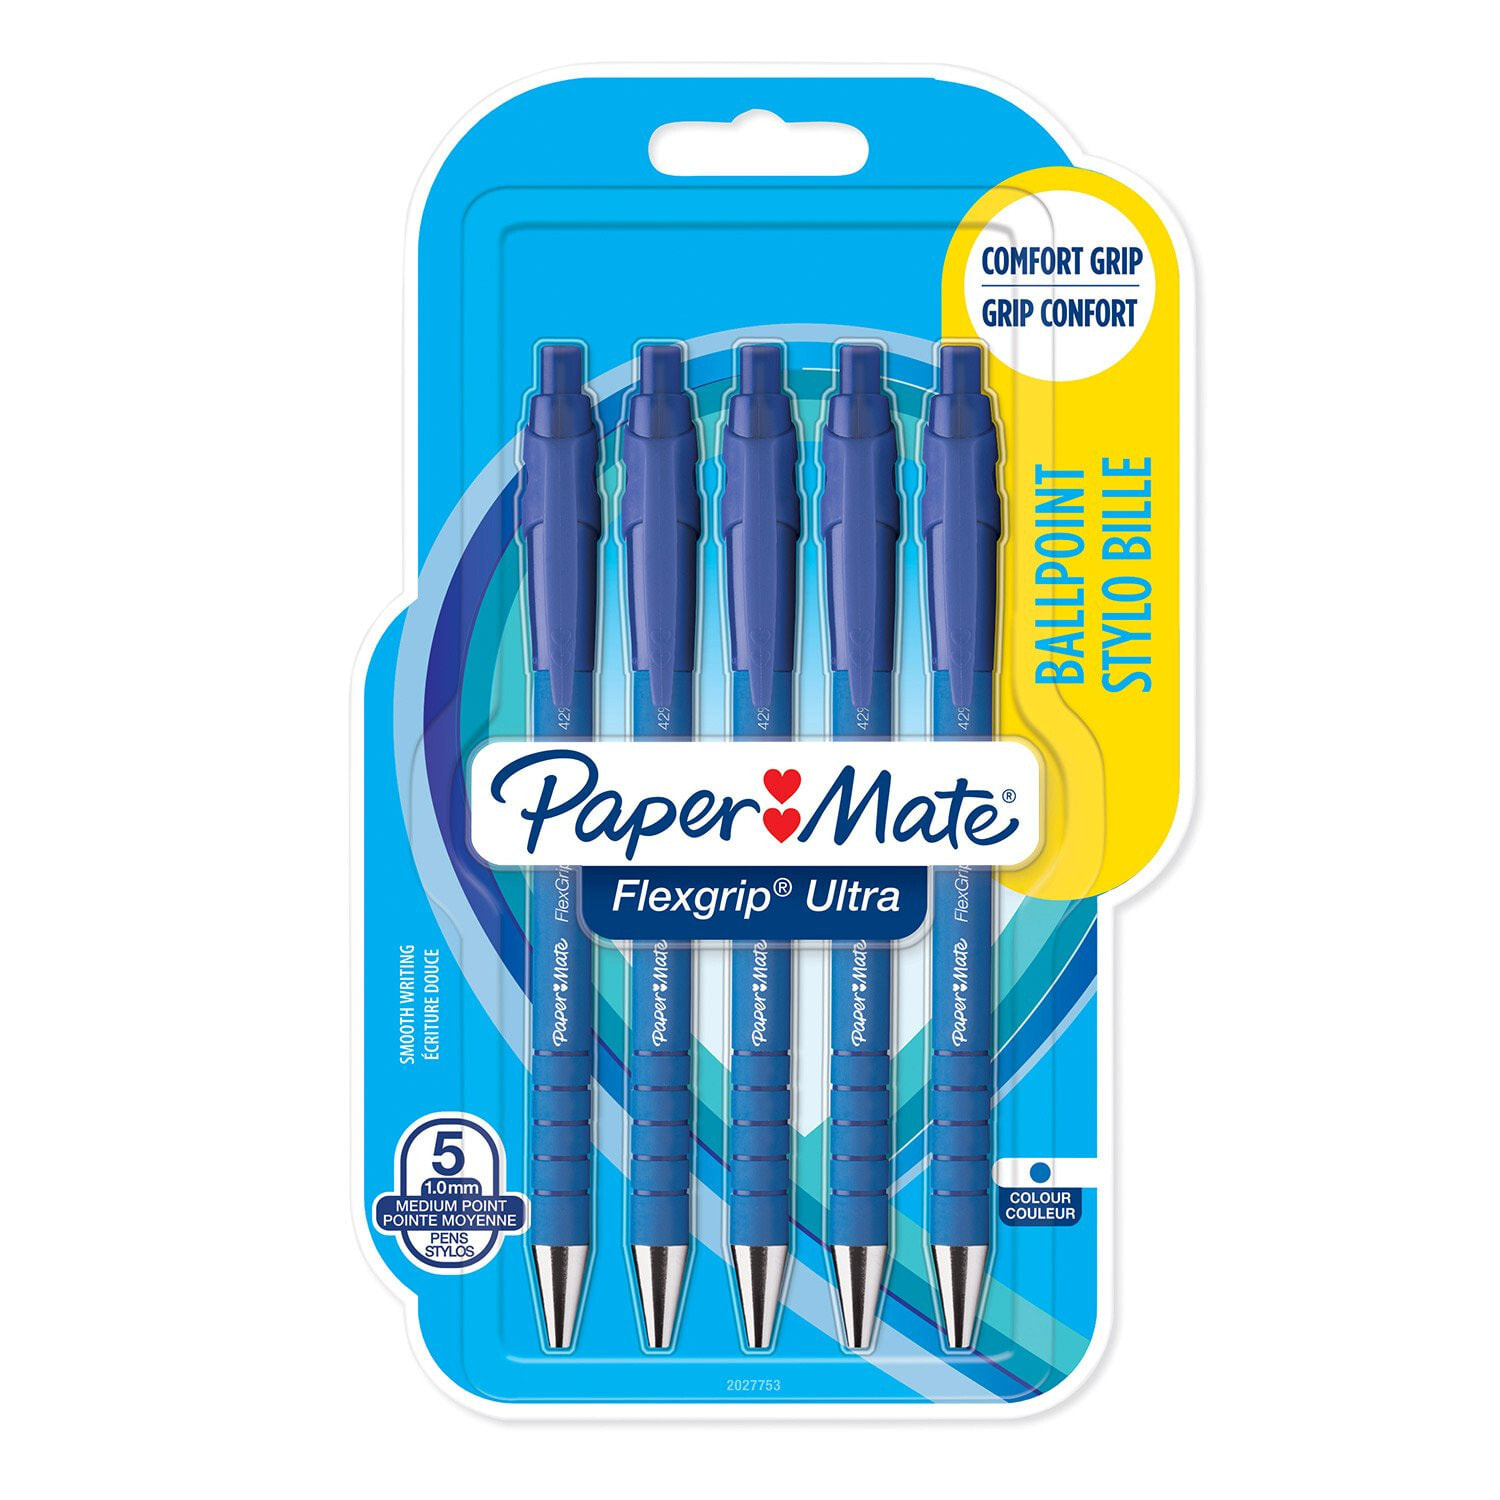 Papermate Flexgrip Ultra Синий Автоматическая нажимная шариковая ручка Средний 5 шт 2027755